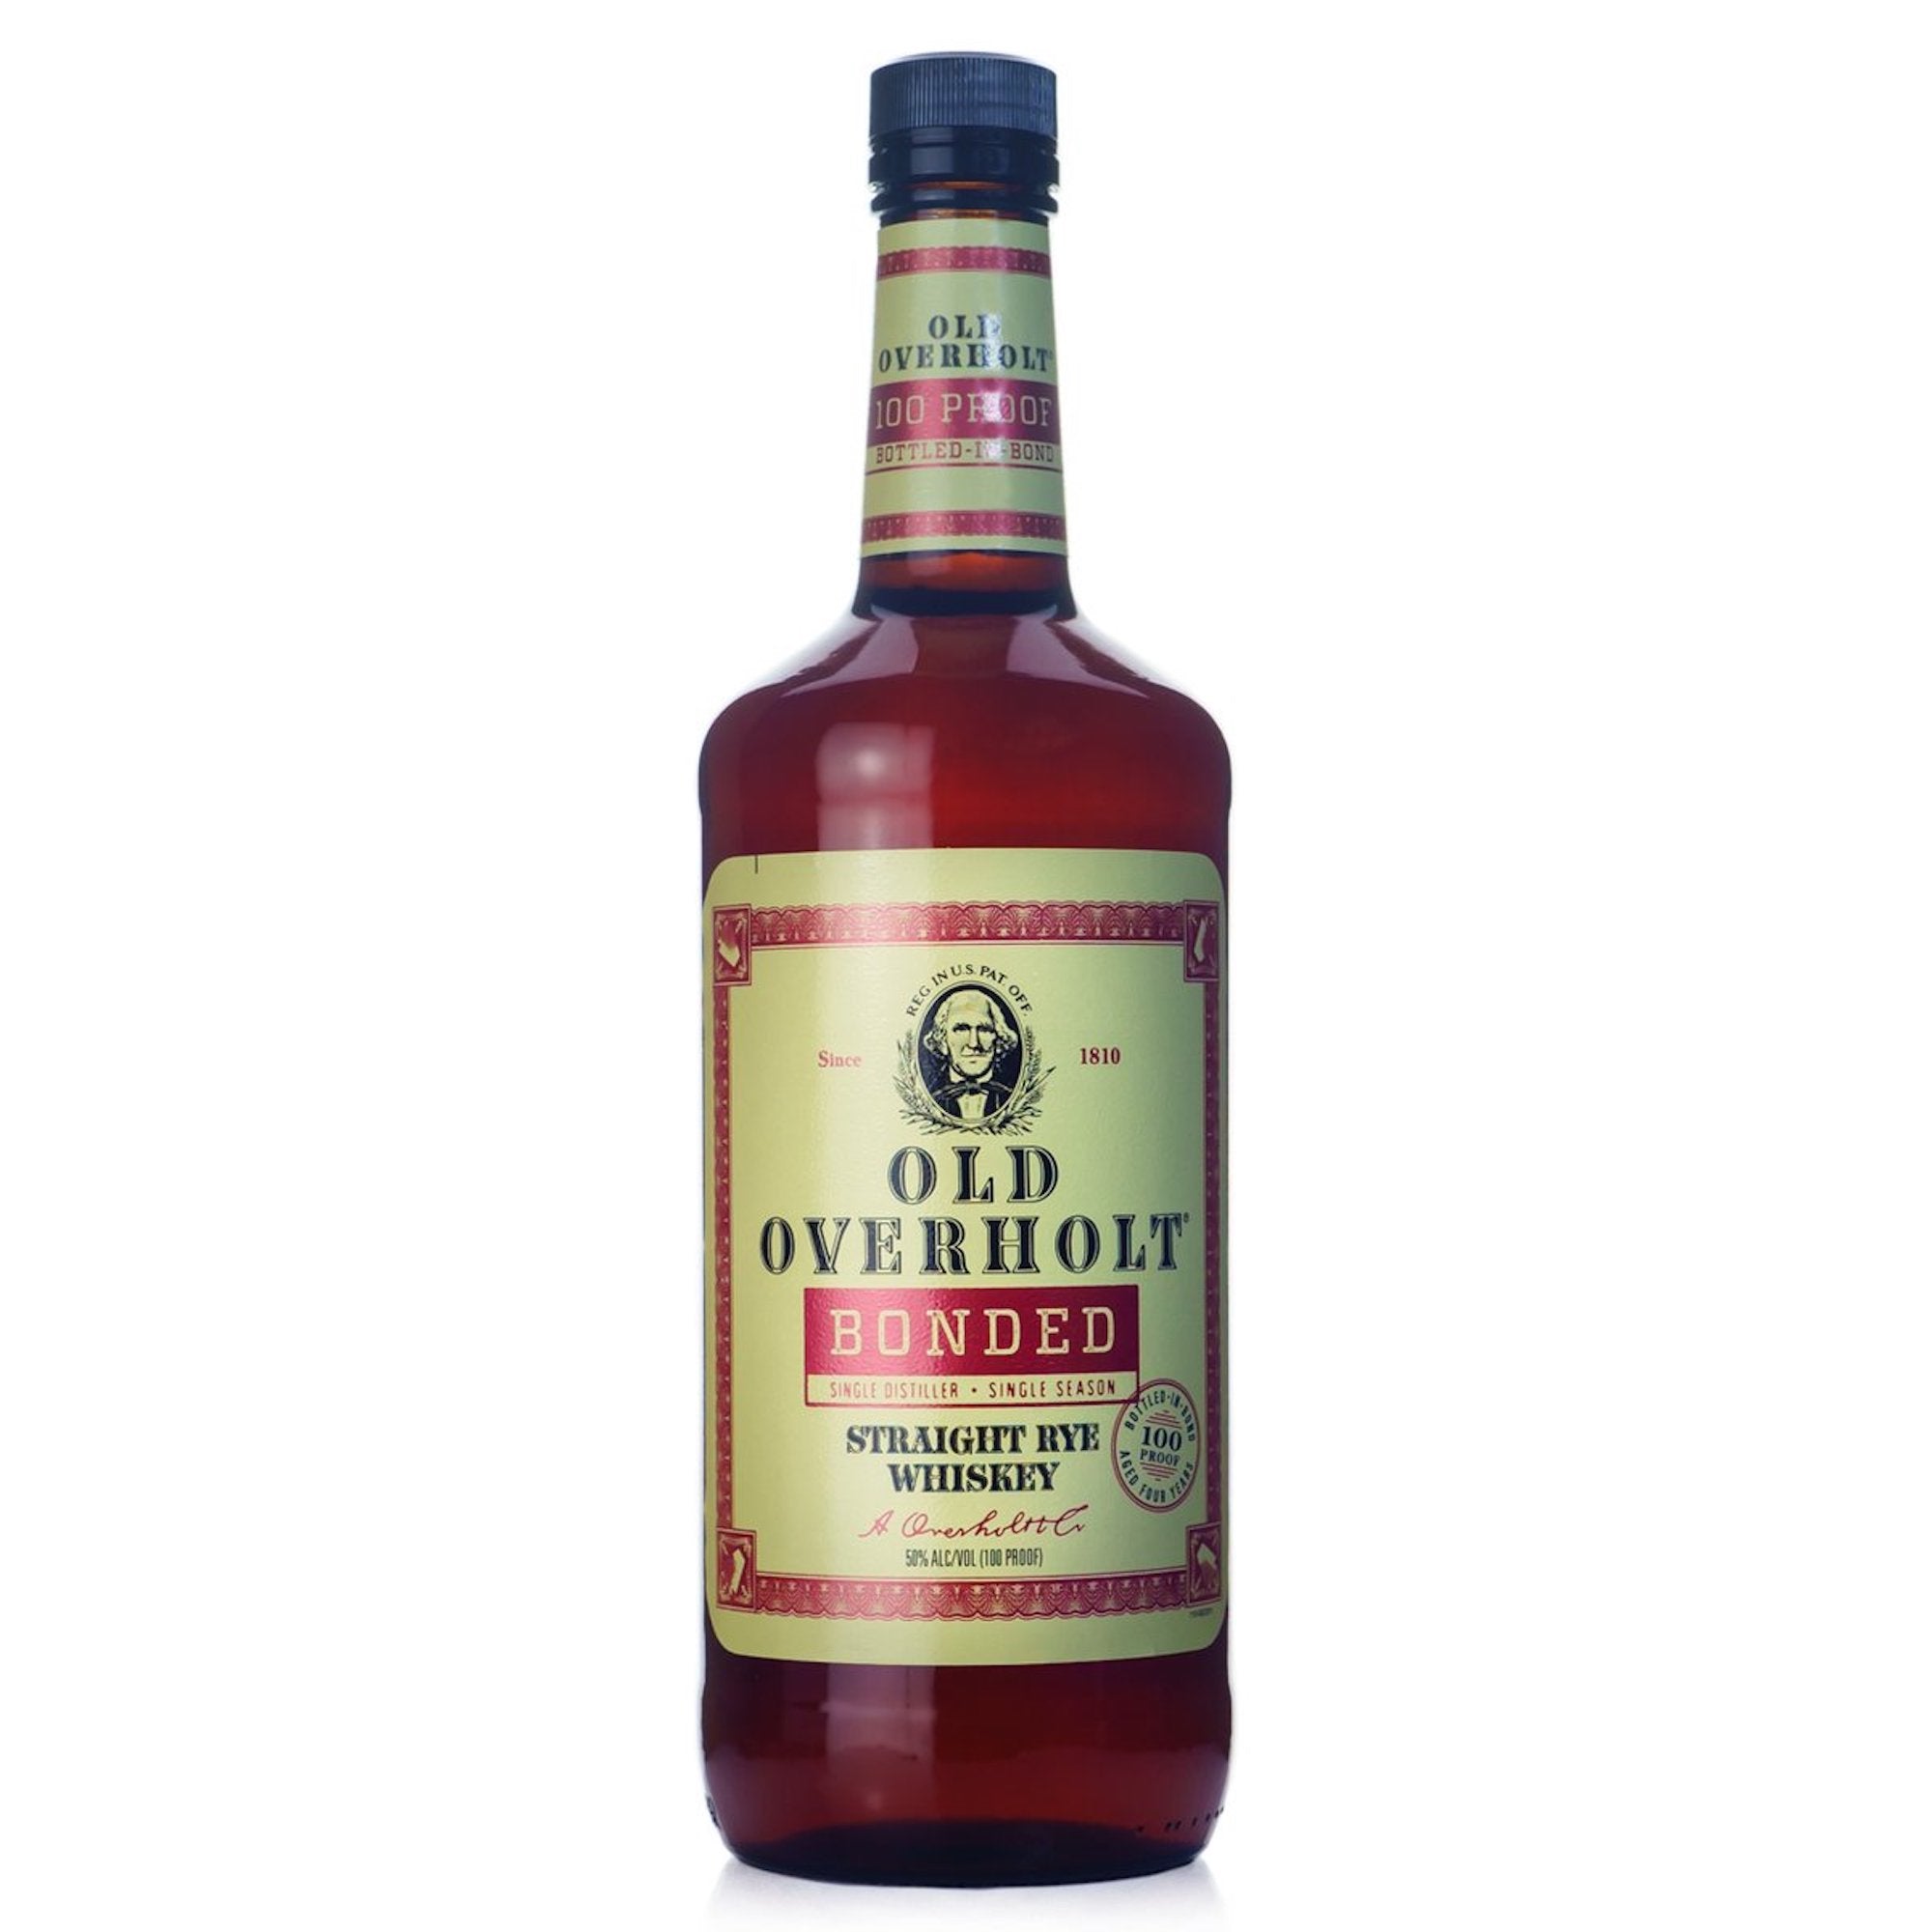 Old Overholt Rye 100 proof Bottled in Bond